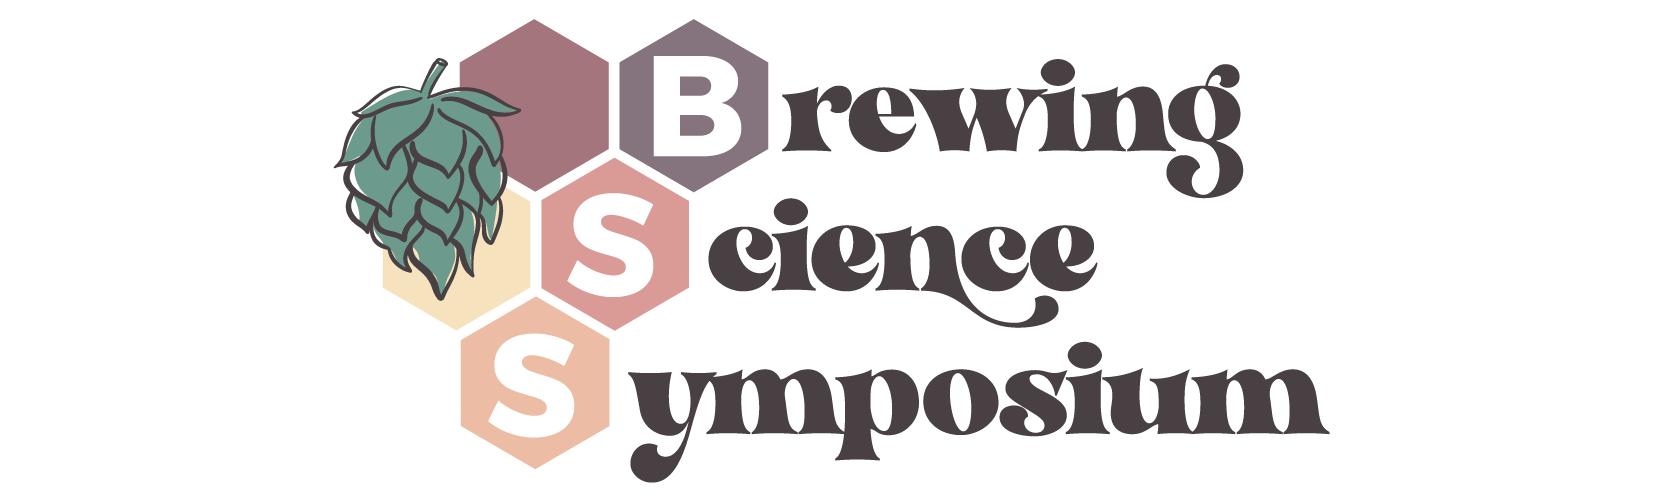 Brewing Science Symposium